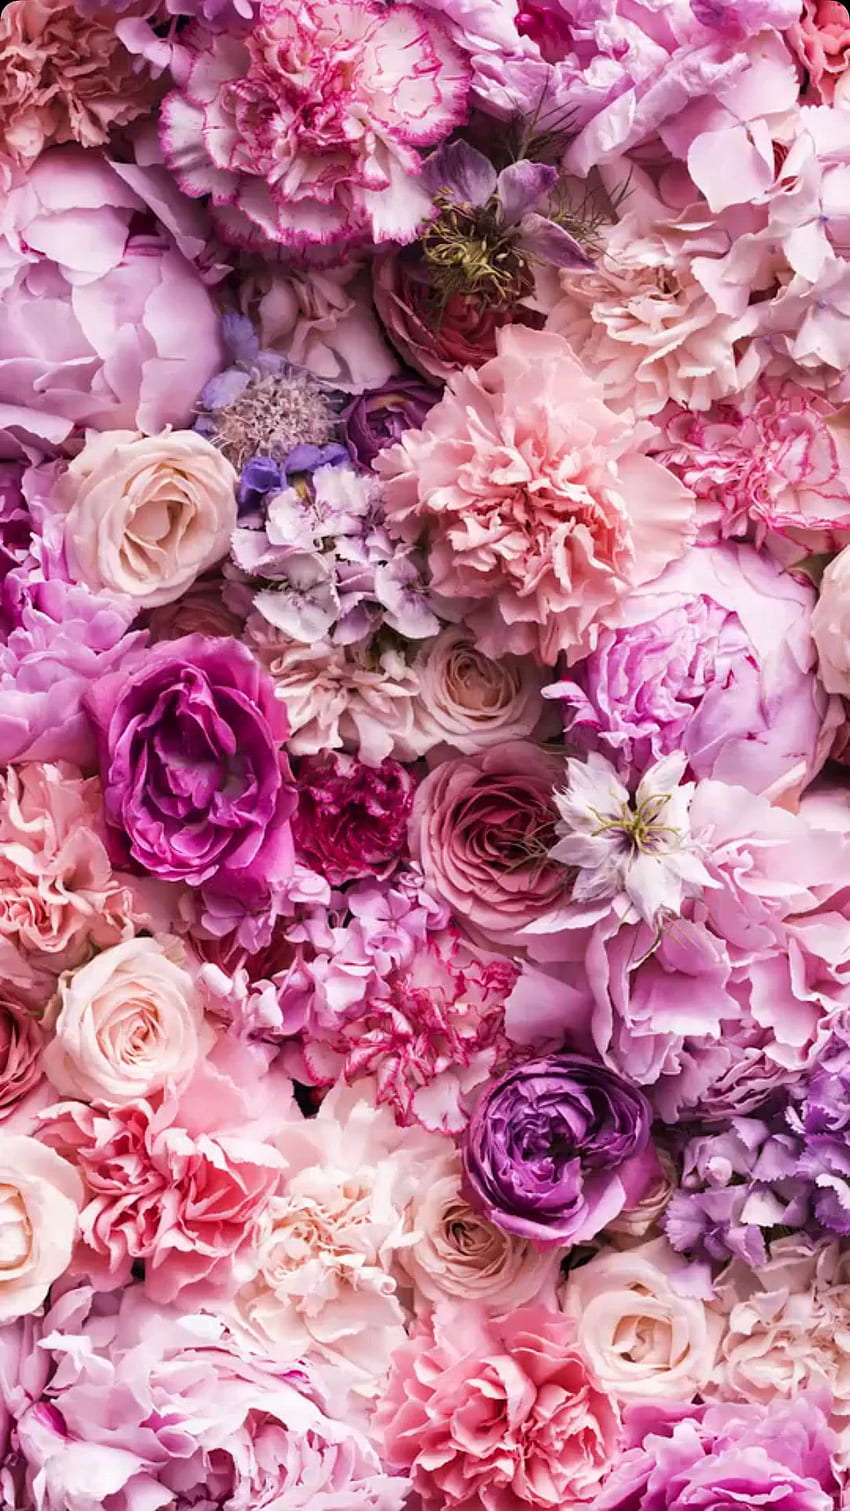 Hoa hồng màu hồng là một biểu tượng của tình yêu và sự lãng mạn. Hãy xem hình ảnh của chúng ta để thưởng thức vẻ đẹp quyến rũ của loài hoa này.